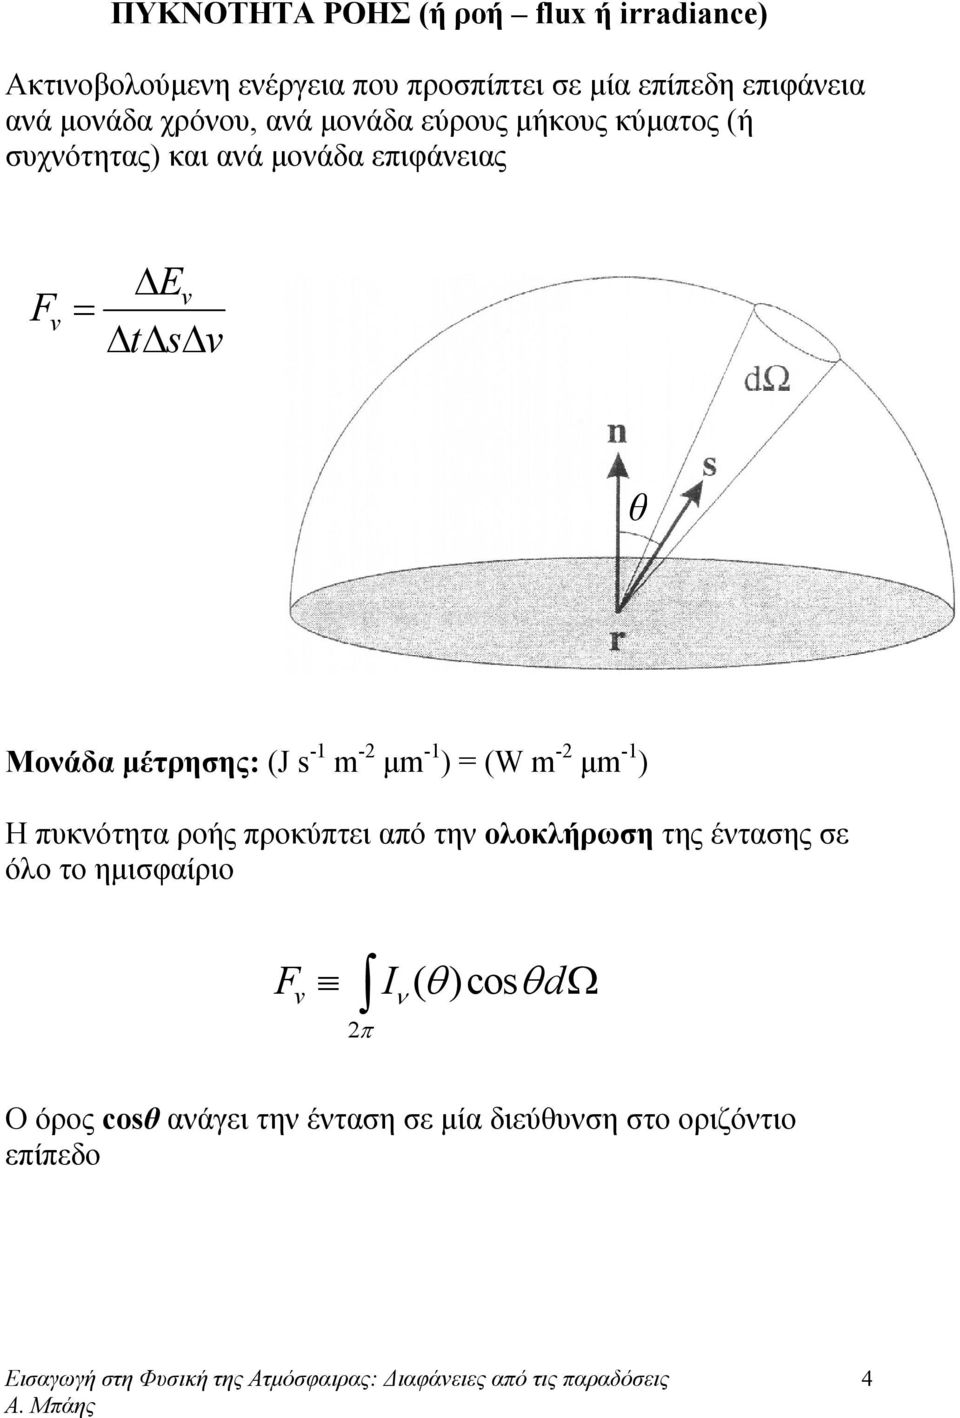 Μονάδα μέτρησης: (J s -1 m -2 μm -1 ) = (W m -2 μm -1 ) Η πυκνότητα ροής προκύπτει από την οοκήρωση της